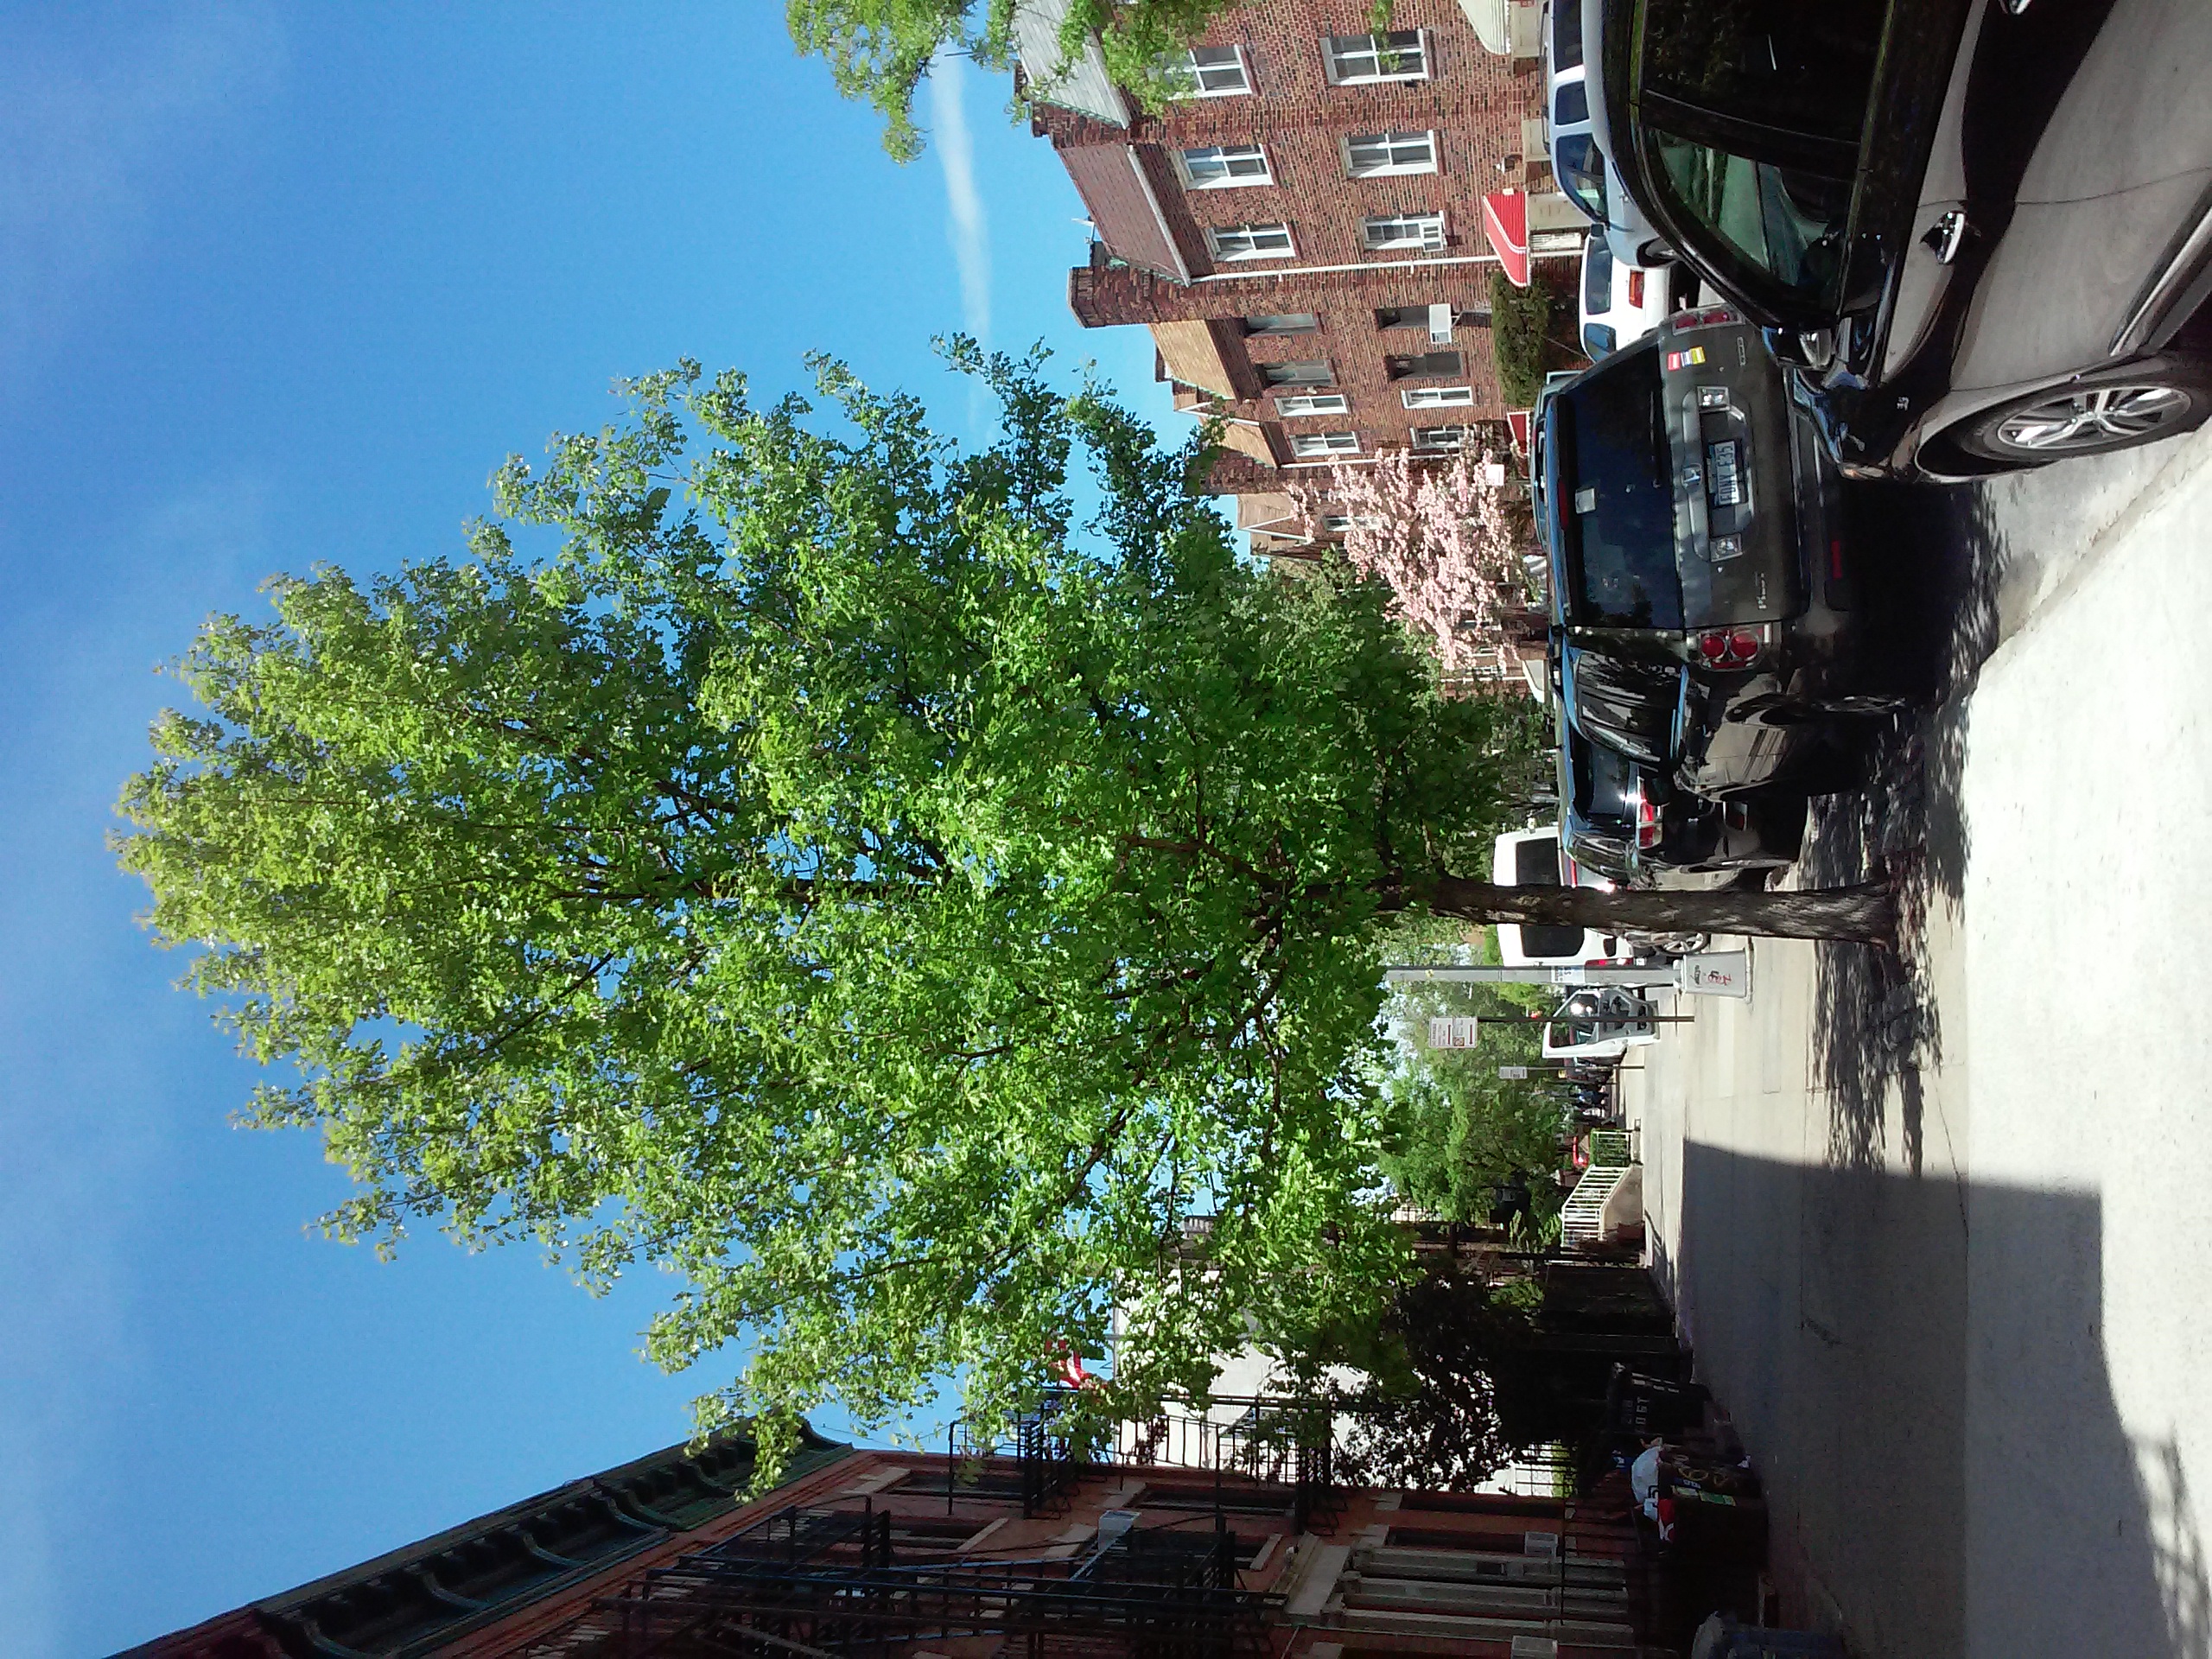 Brooklyn 3rd avenue & 68th street in May 2018.jpg. 